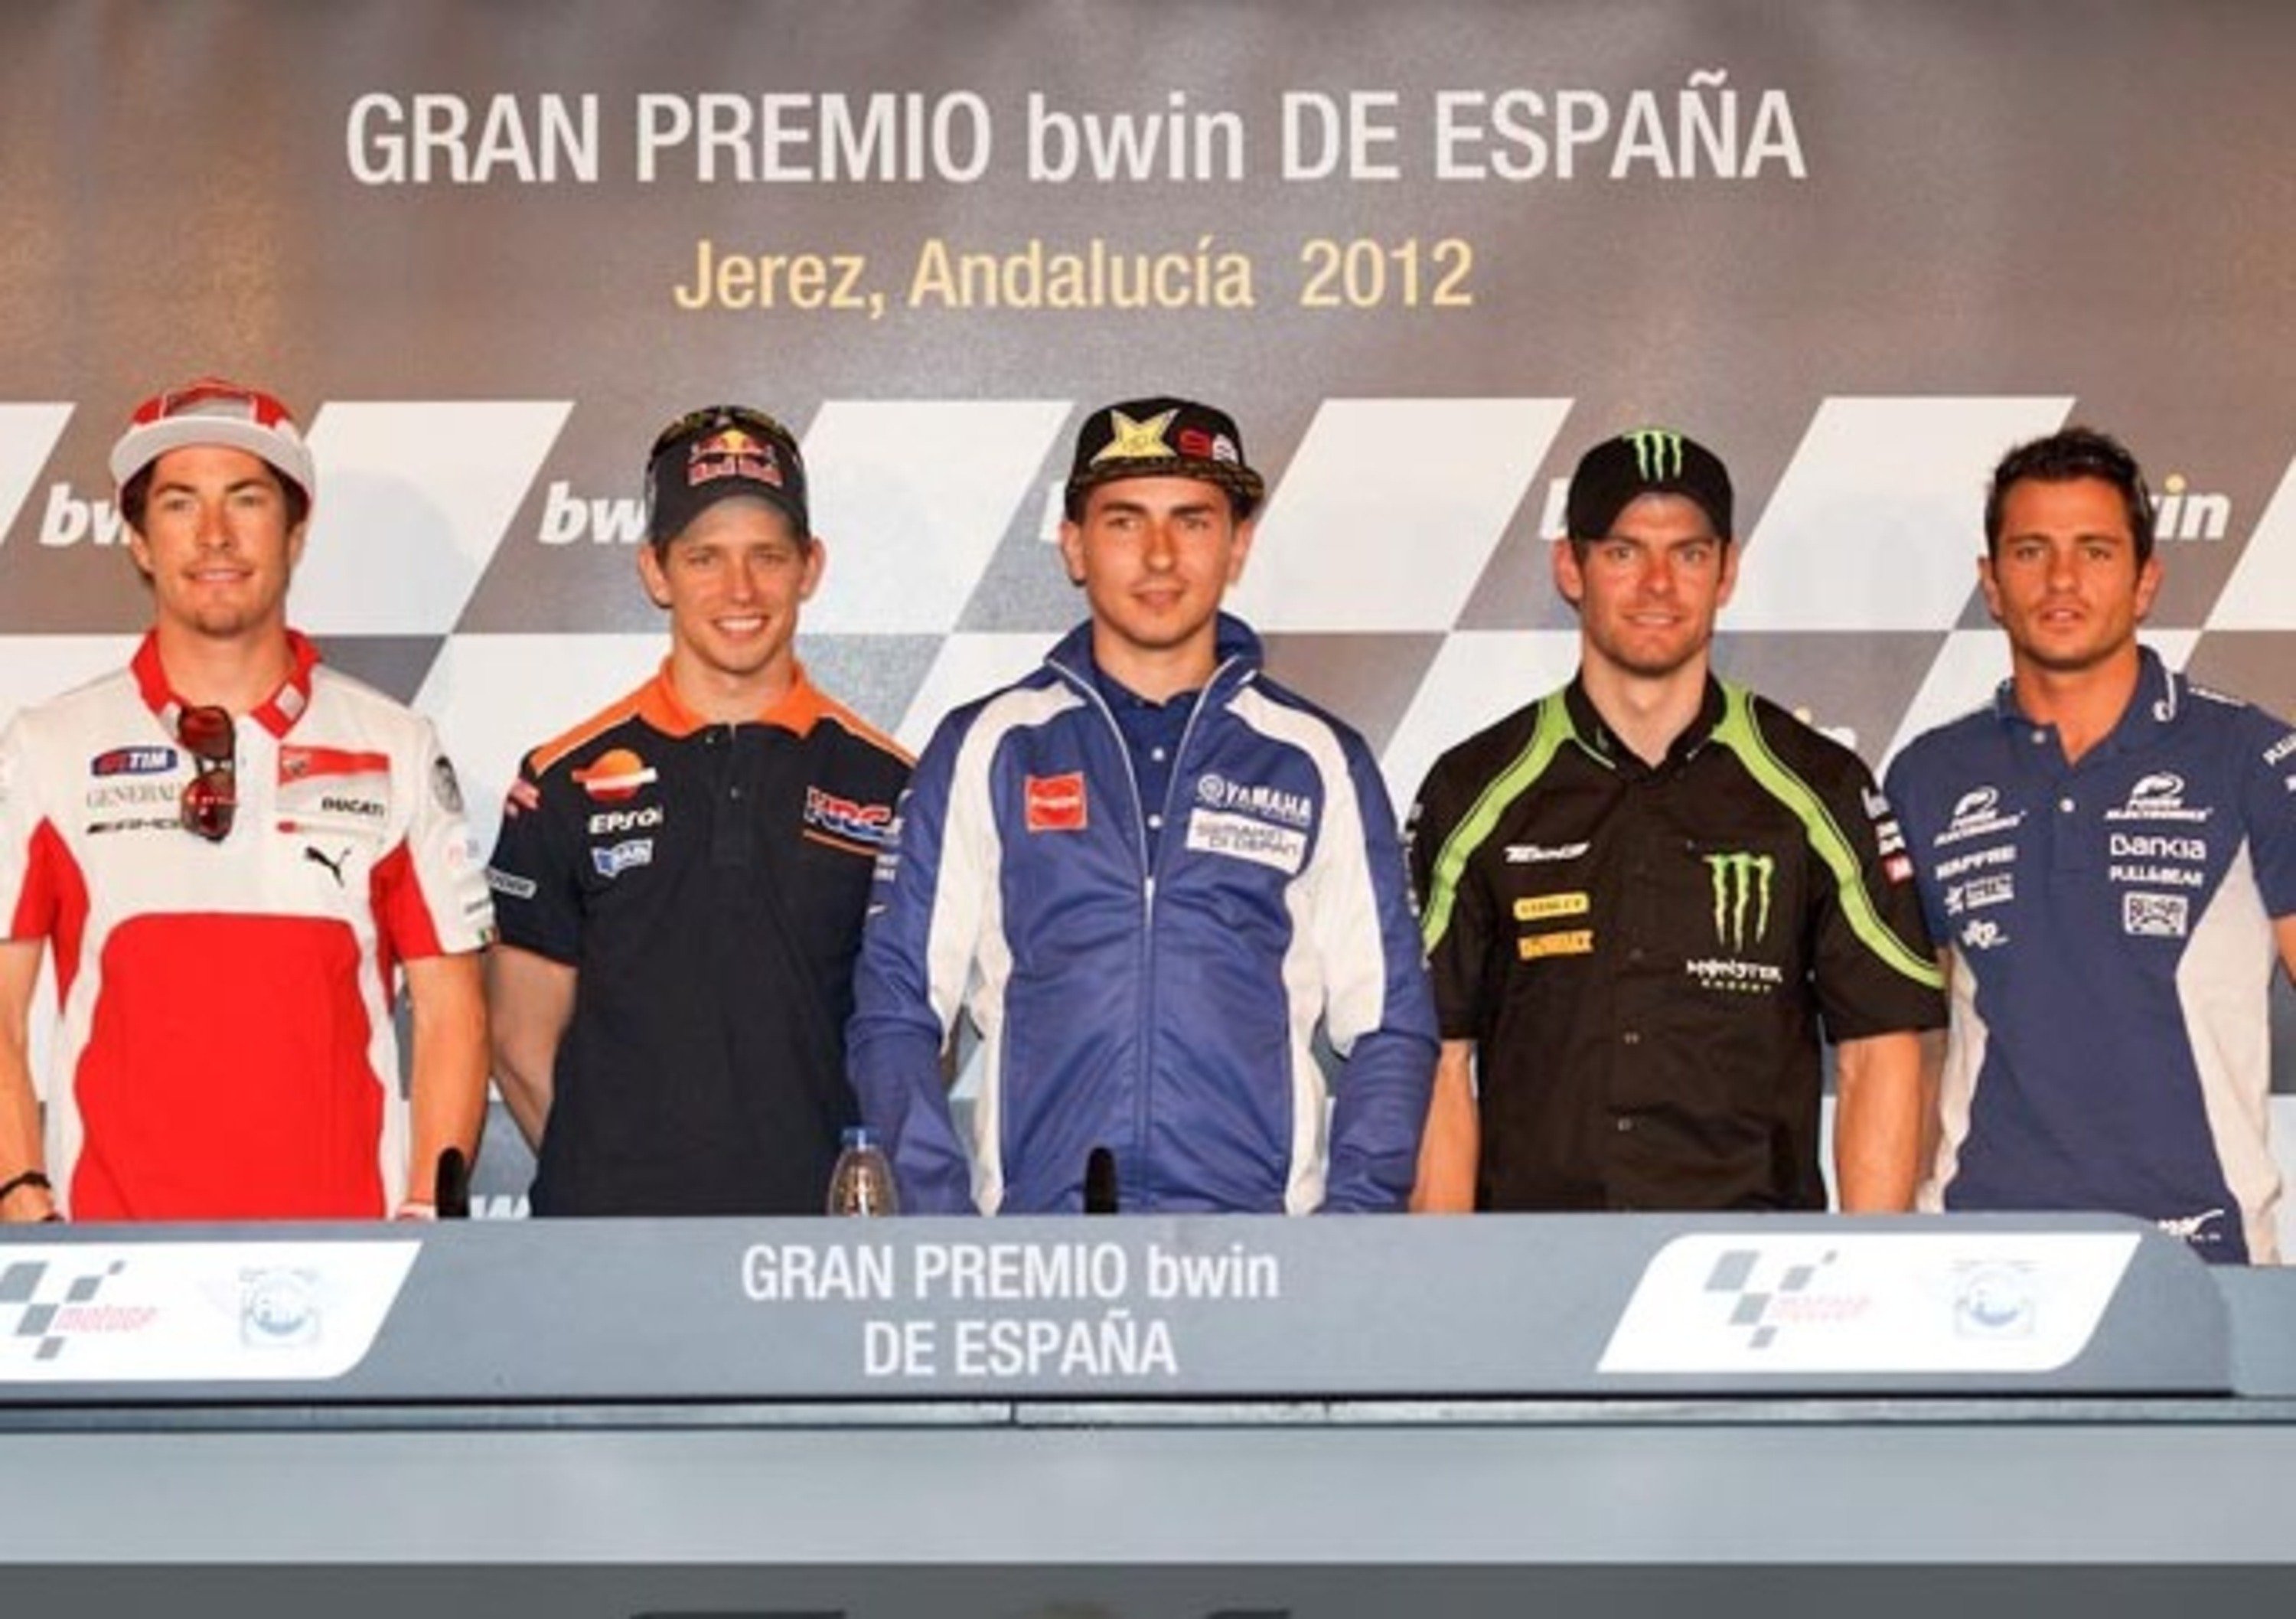 GP di Jerez. Le anticipazioni dei piloti